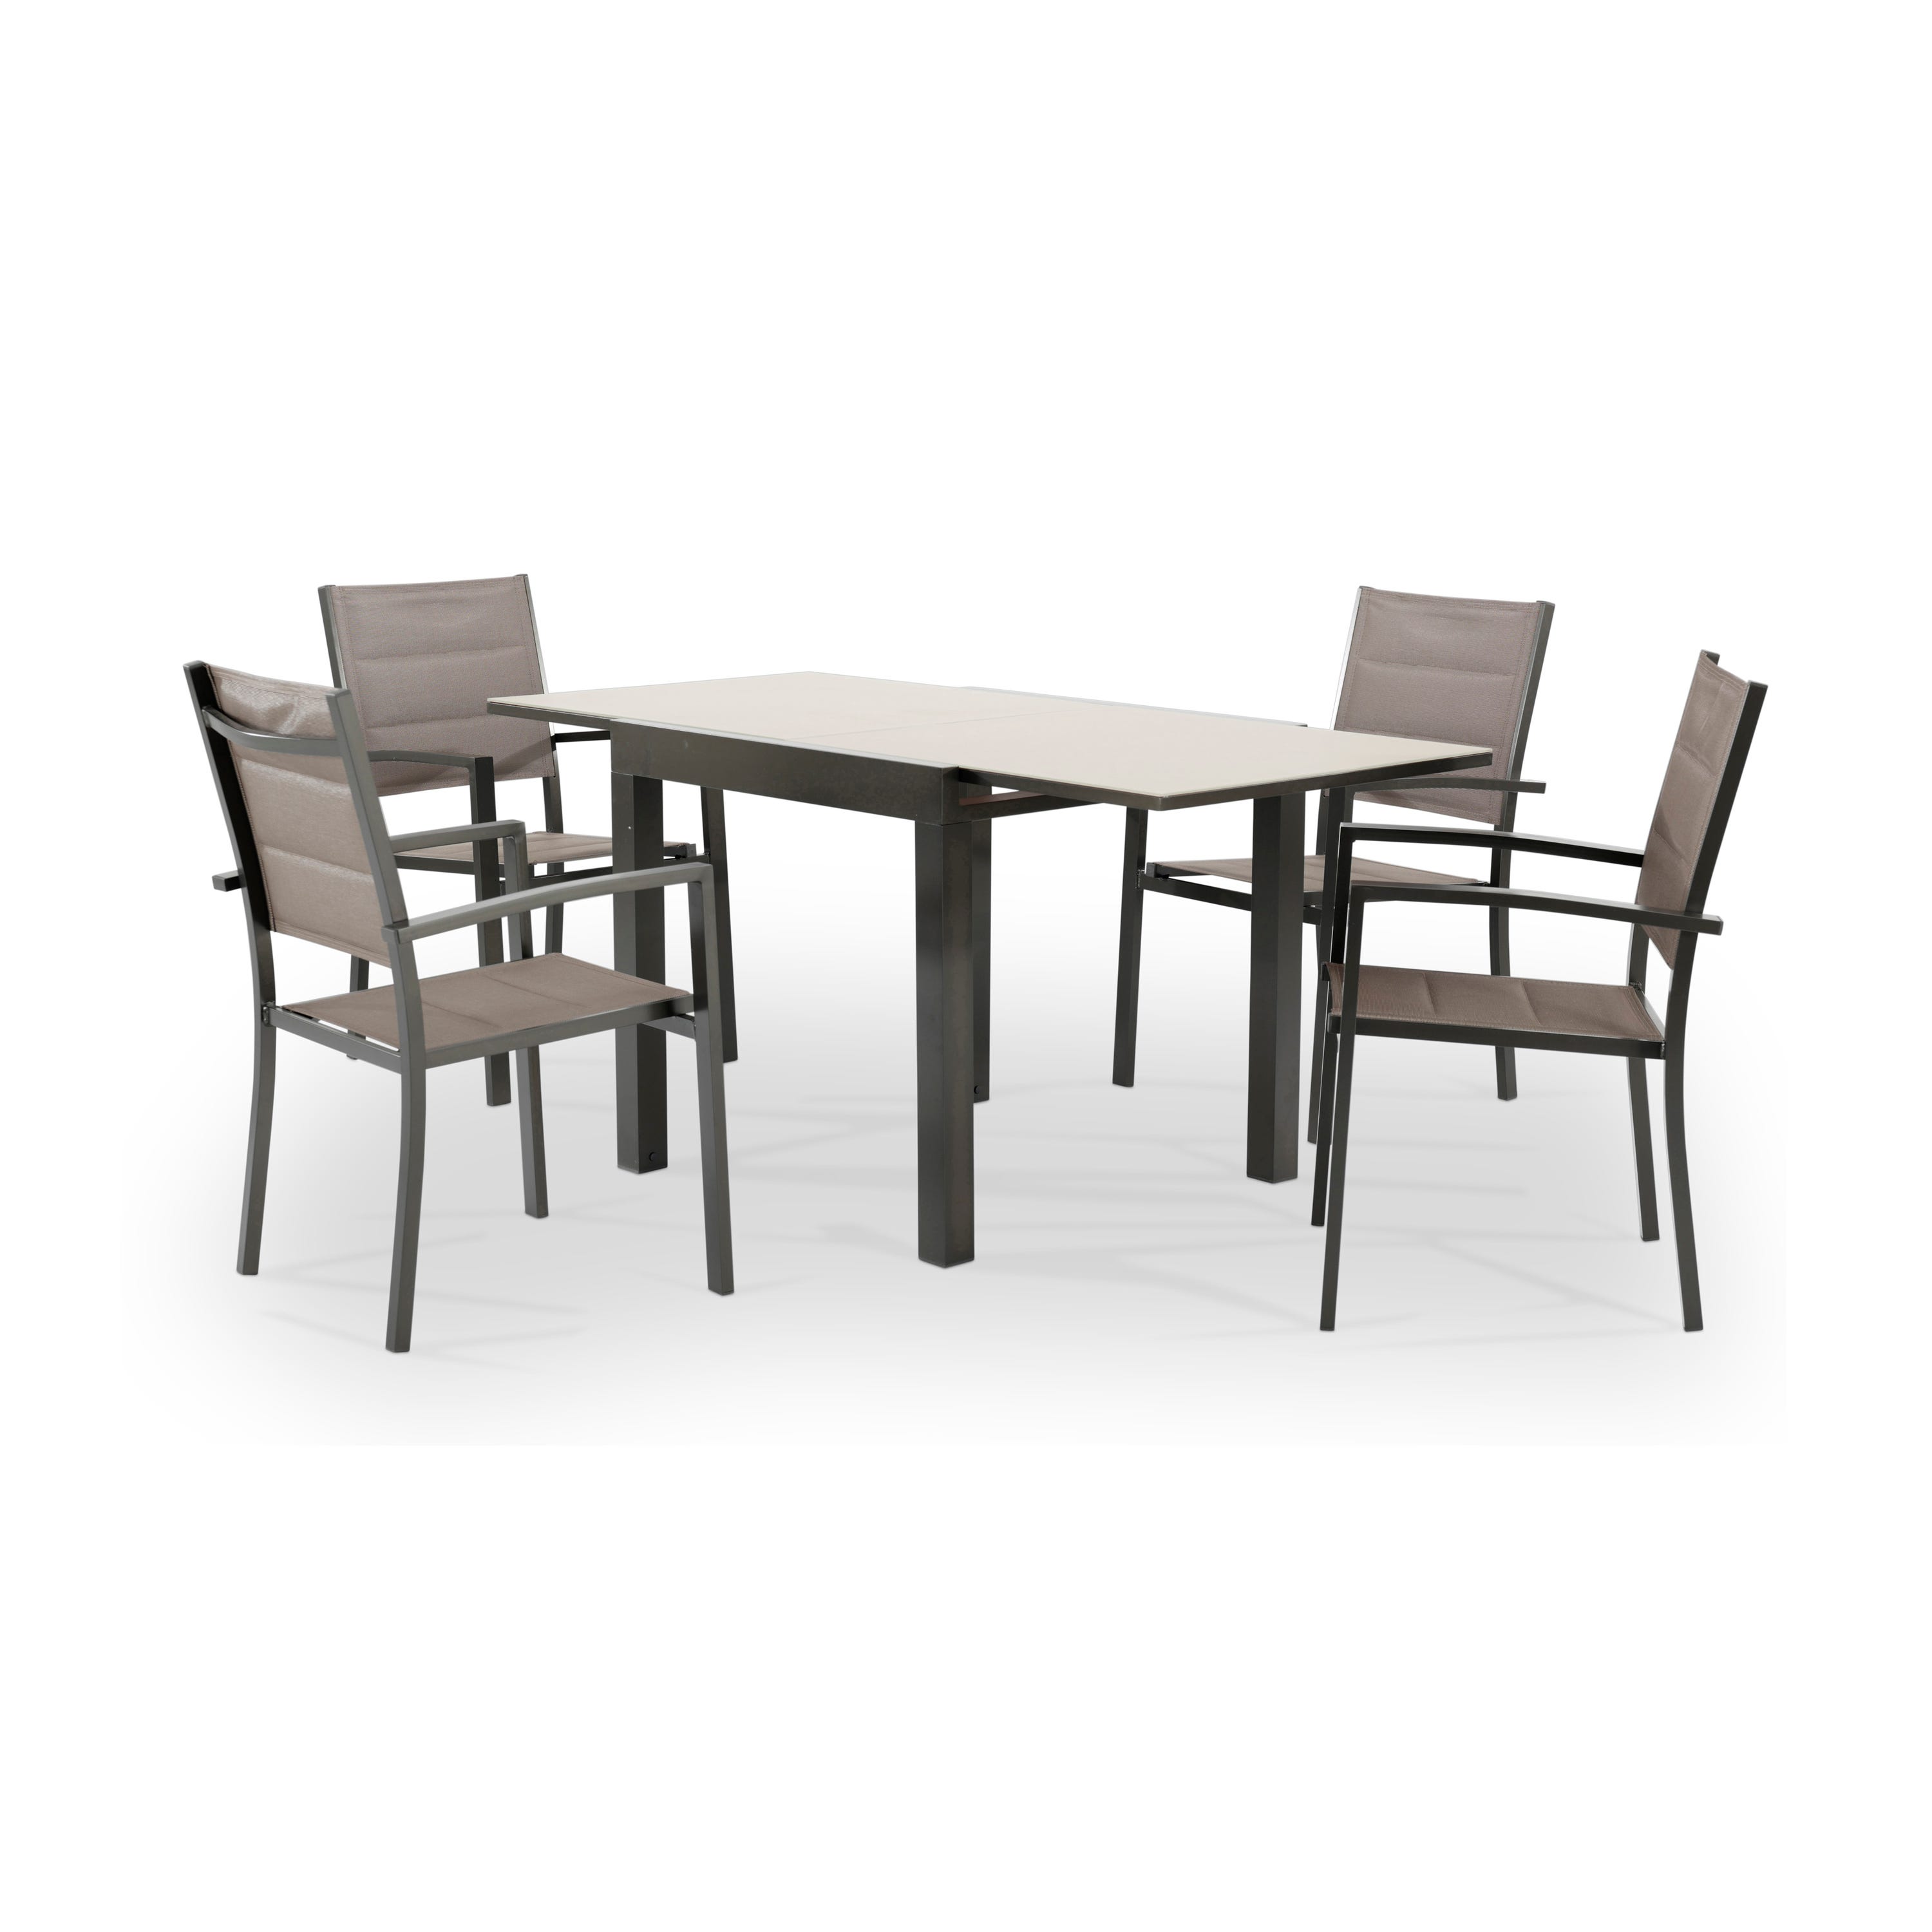 Conjunto mesa y sillas jardín 4 plazas aluminio marrón - Tokyo